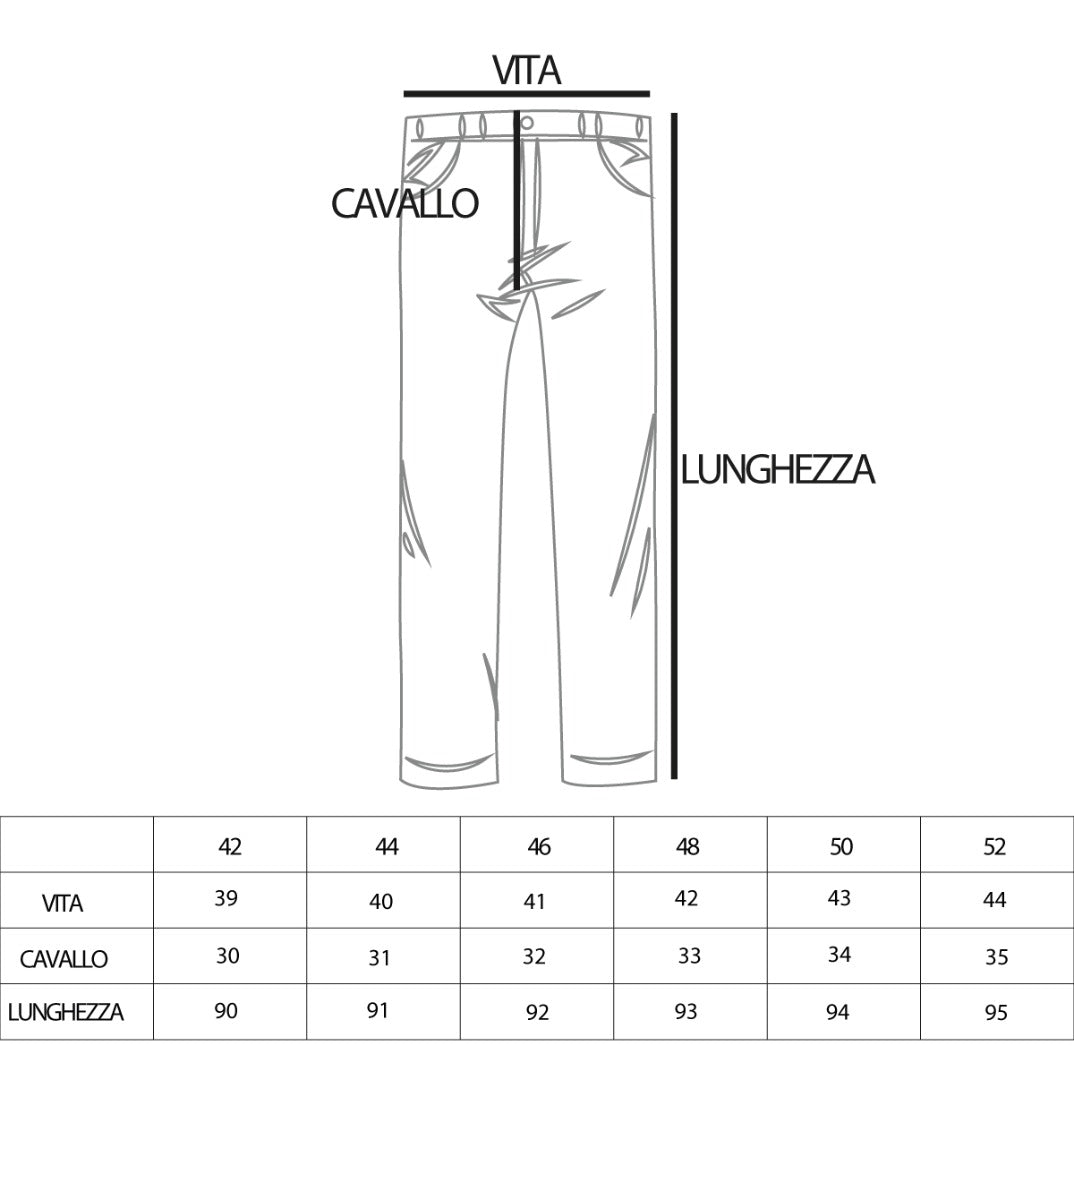 Pantaloni Uomo Tasca America Con Pinces Abbottonatura Allungata Nero Casual Elegante GIOSAL-P3568A